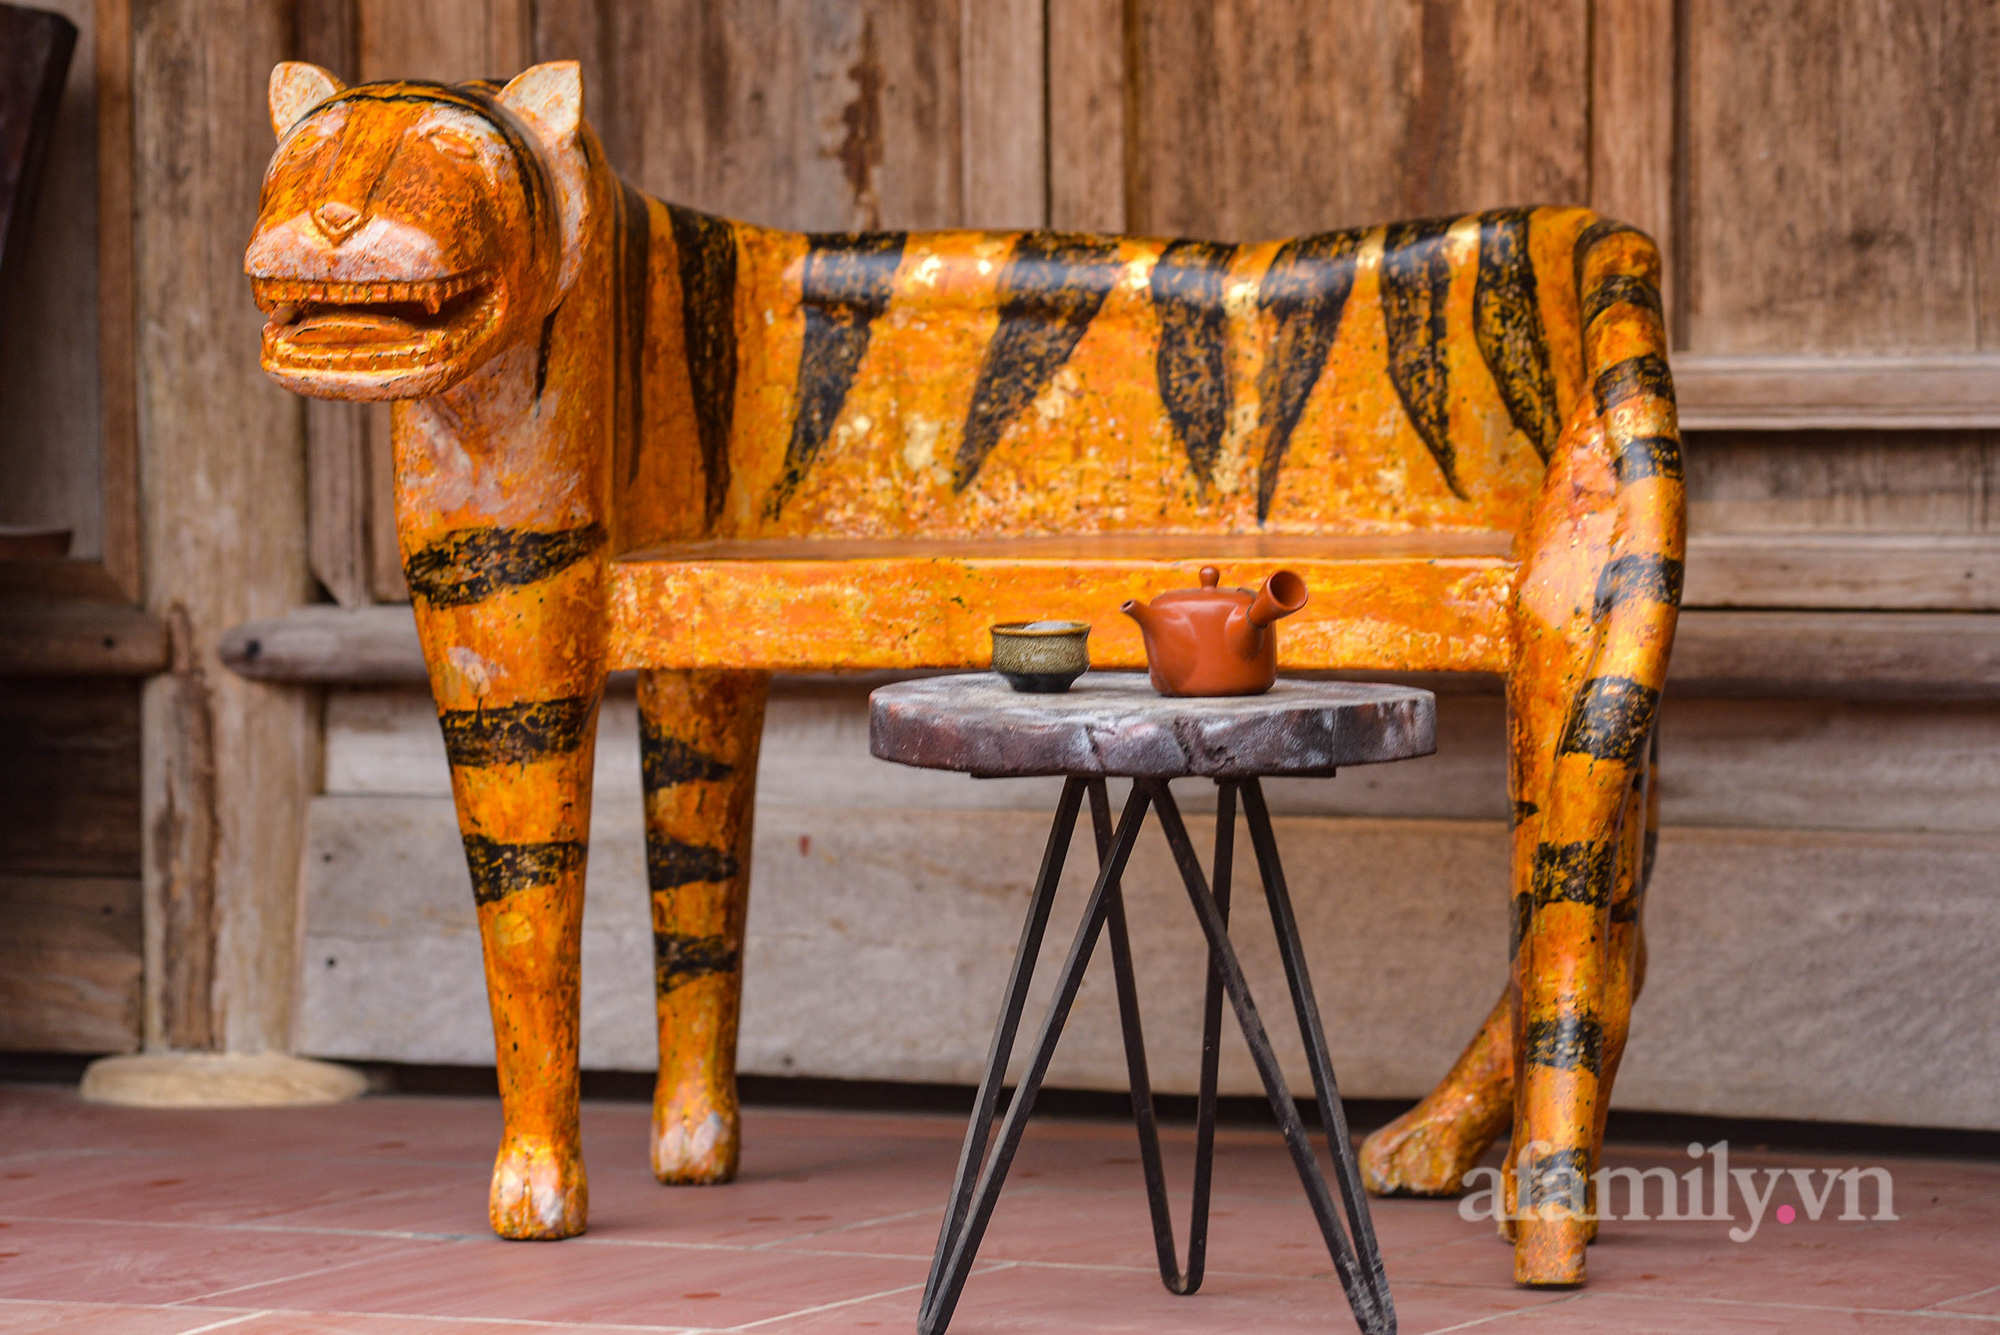 Nghệ nhân Hà Nội miệt mài sáng tác hàng trăm con hổ độc bản trên gỗ mít ra mắt dịp Tết Nguyên đán Nhâm Dần  - Ảnh 9.